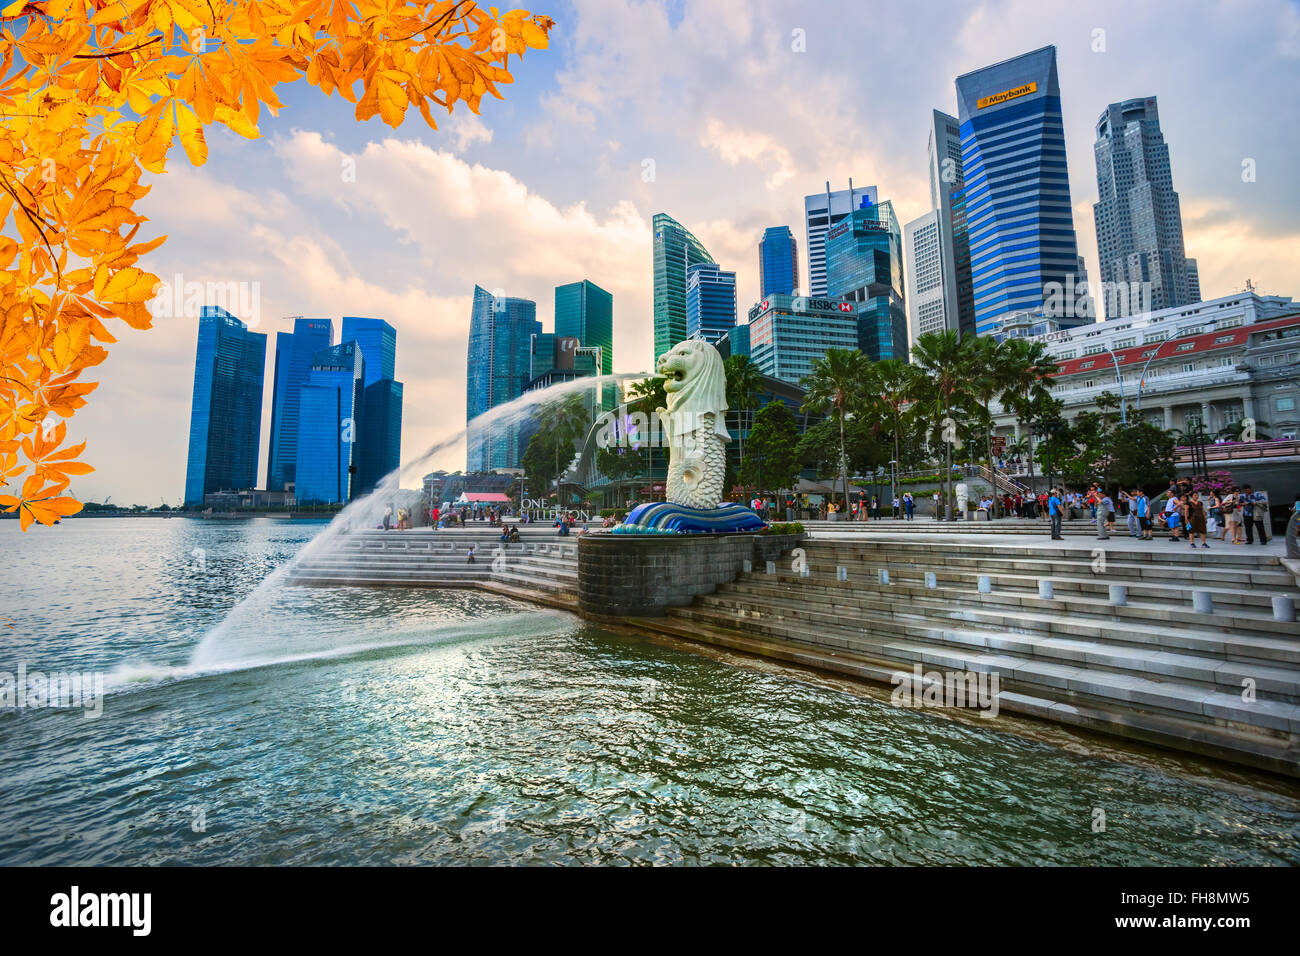 Singapur-März 19: The Merlion und das Marina Bay Sands Resort Hotel, angekündigt als der weltweit teuersten Standalone Casino p Stockfoto